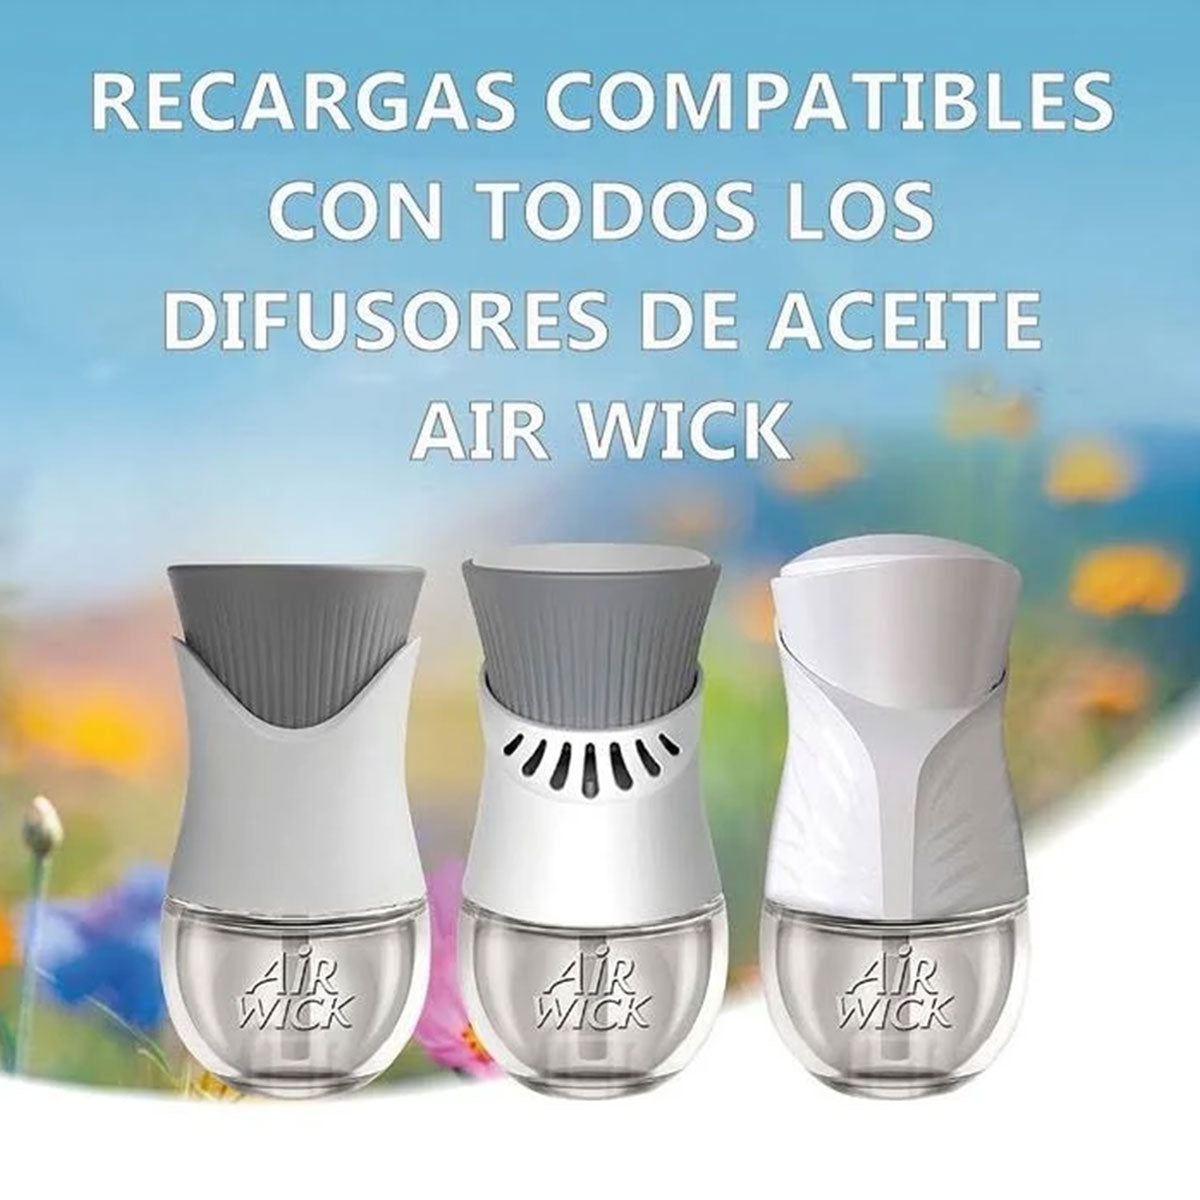 Pack Ahorro Difusor Eléctrico + 2 Repuestos 21 ml Aromatizante de Ambientes Vainilla Air Wick